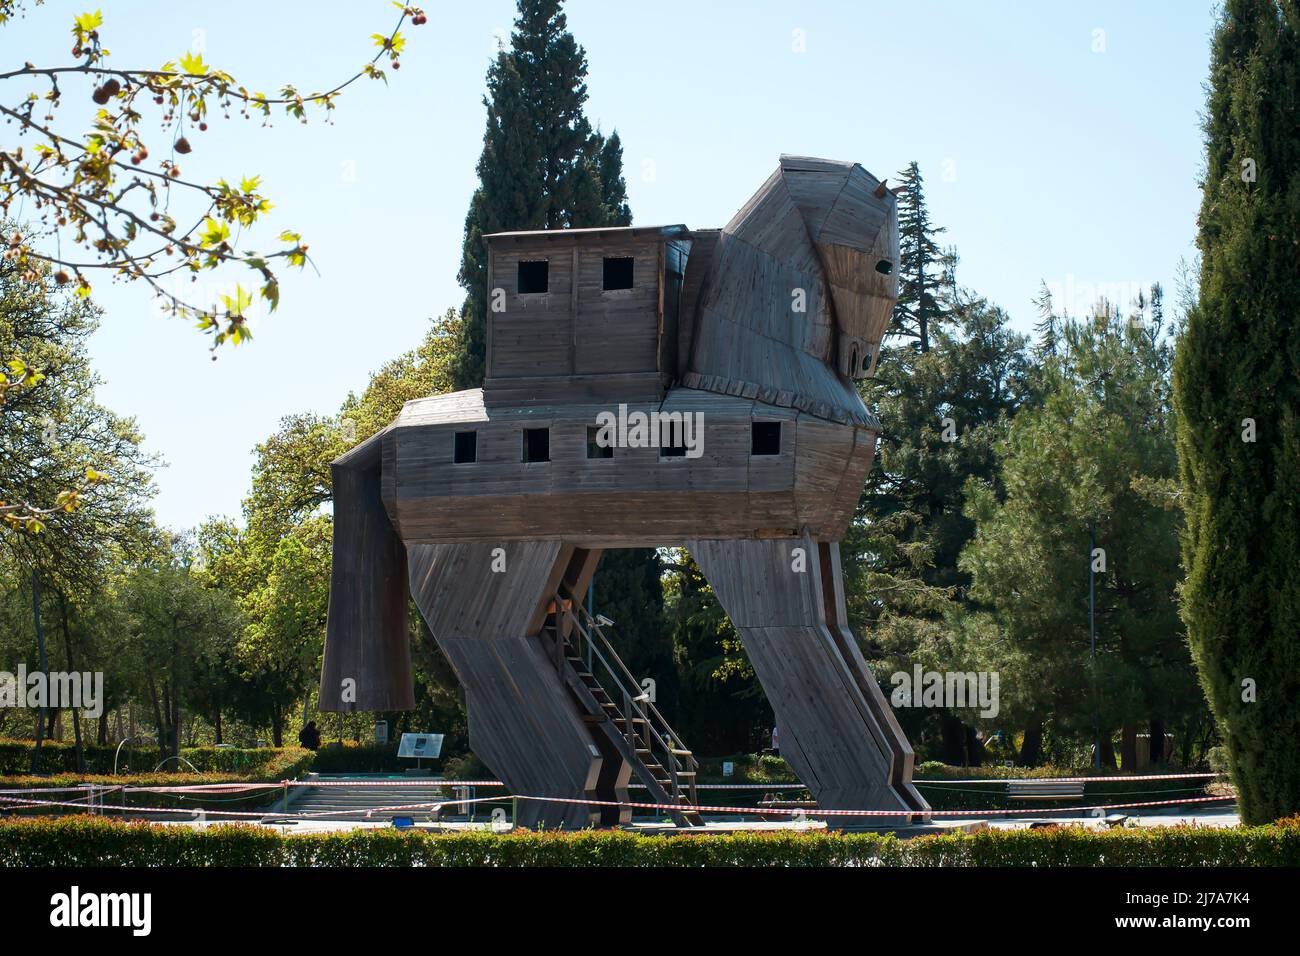 Immense cheval de Troie en bois au musée en plein air de Canakkale, Turquie. Cheval Troyan bâtiment symbolique de l'ancienne ville de Troie (Truva) Banque D'Images